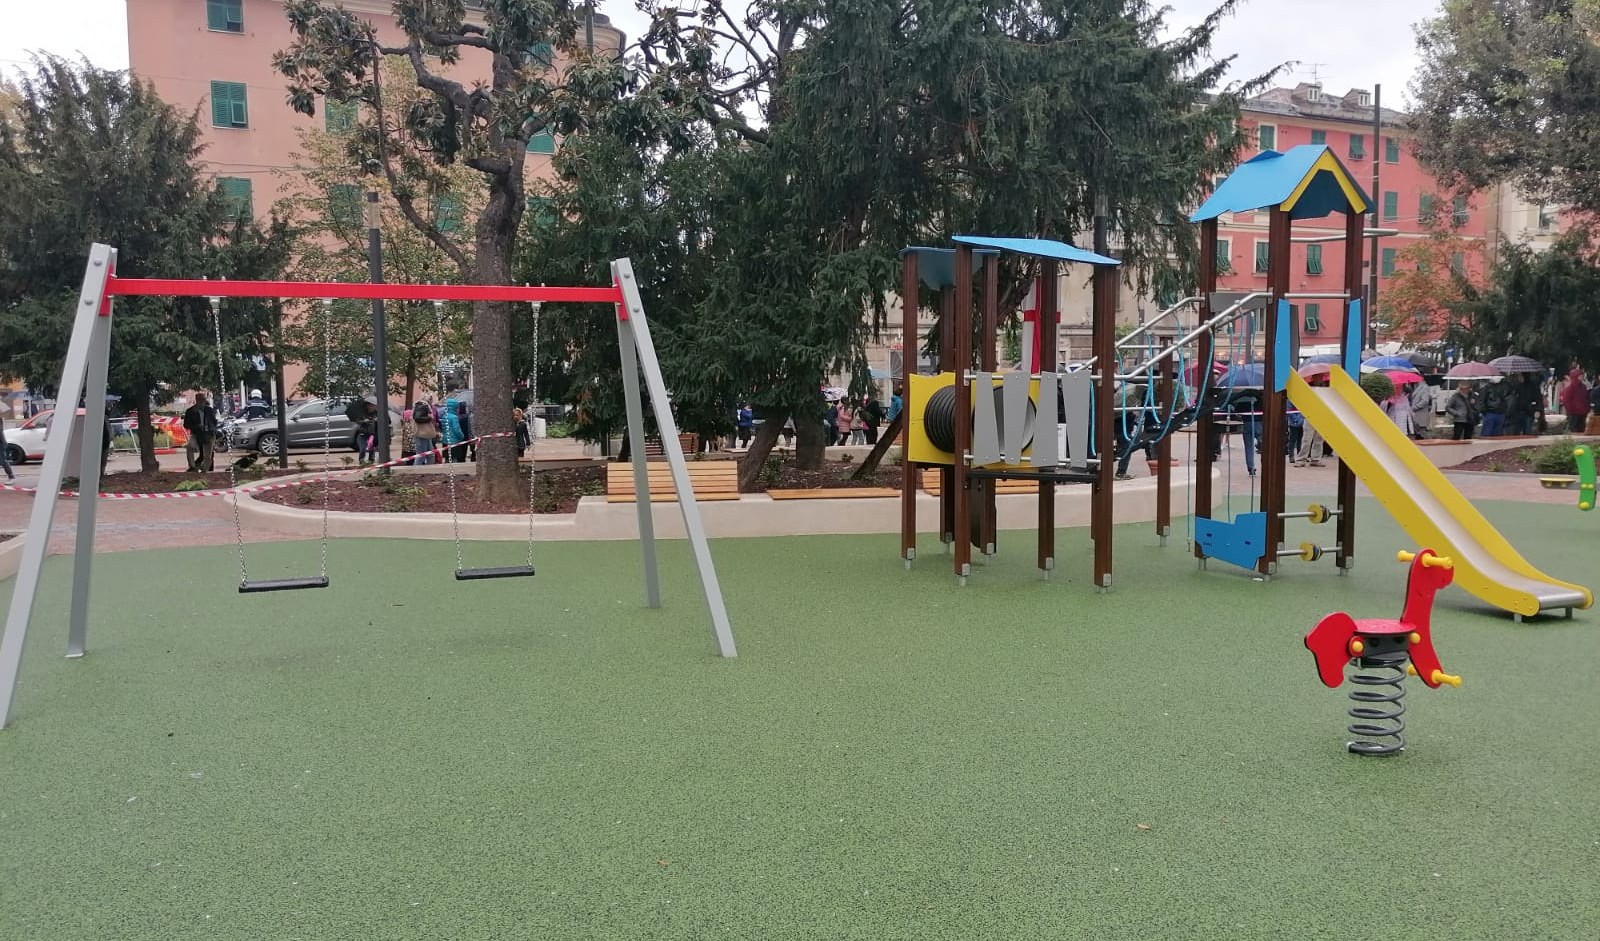 Nuovo look per piazza Rizzolio a Cornigliano tra giochi per bambini e panchine 'antivandali'